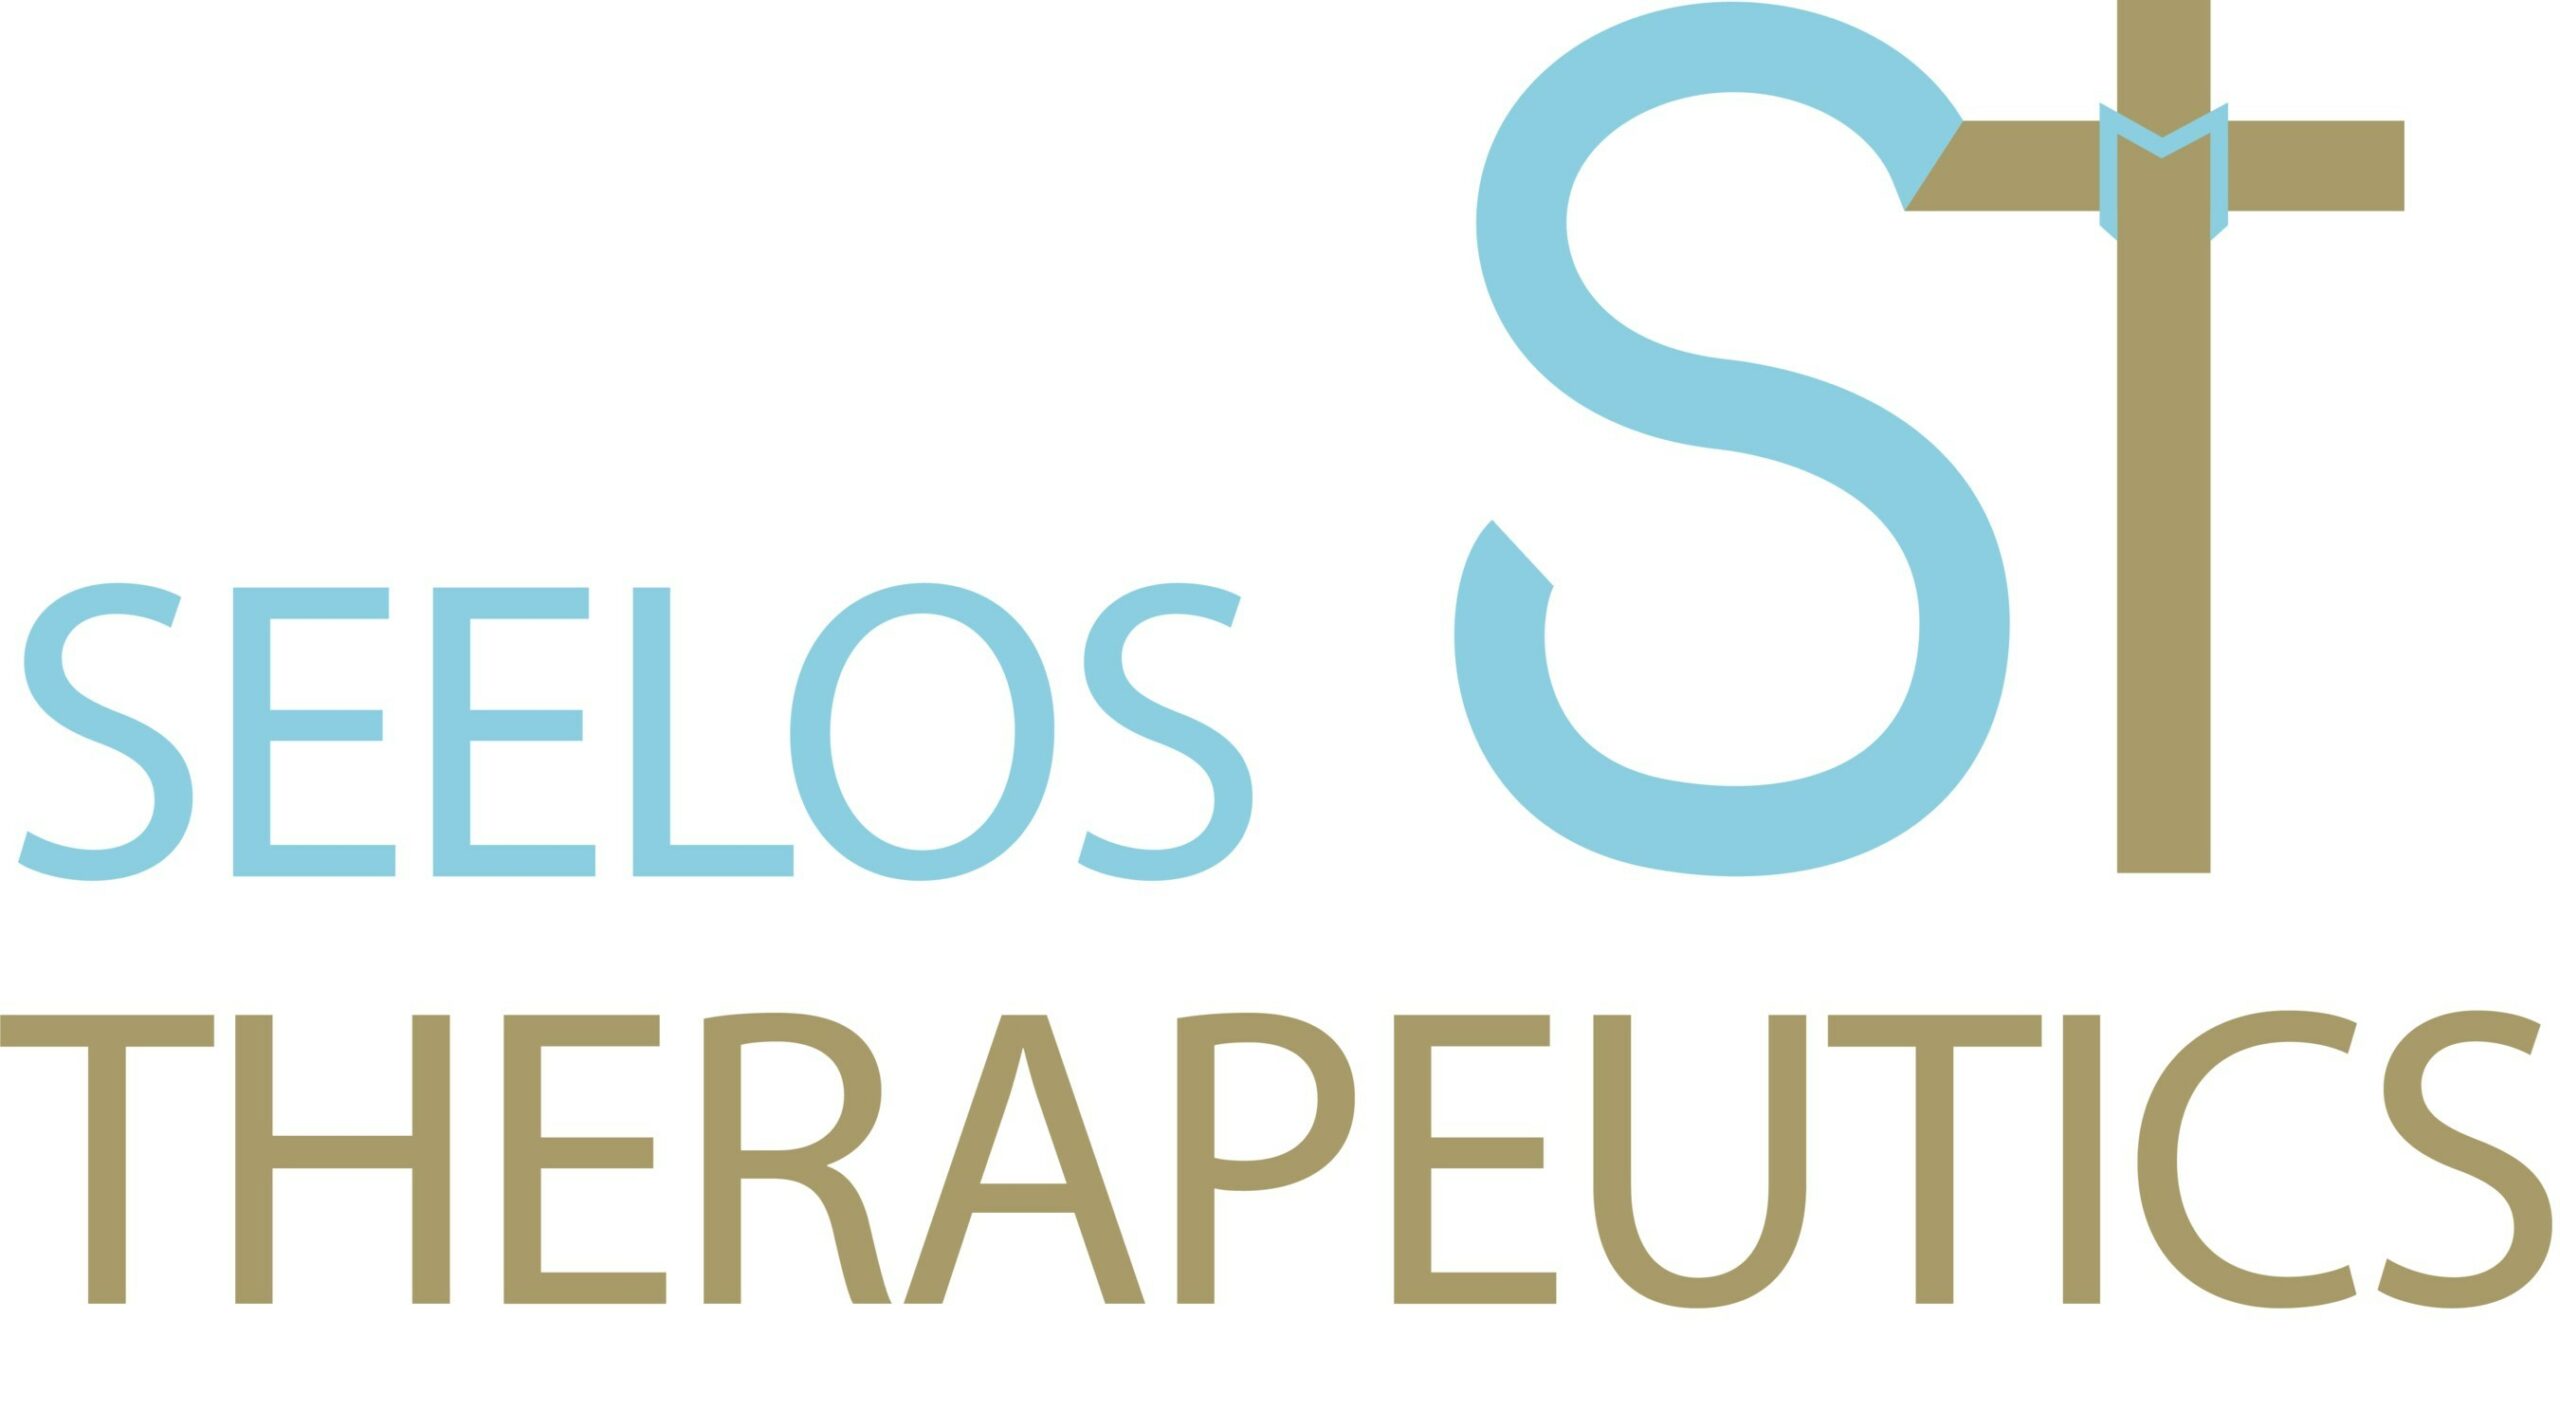 Seelos Therapeutics